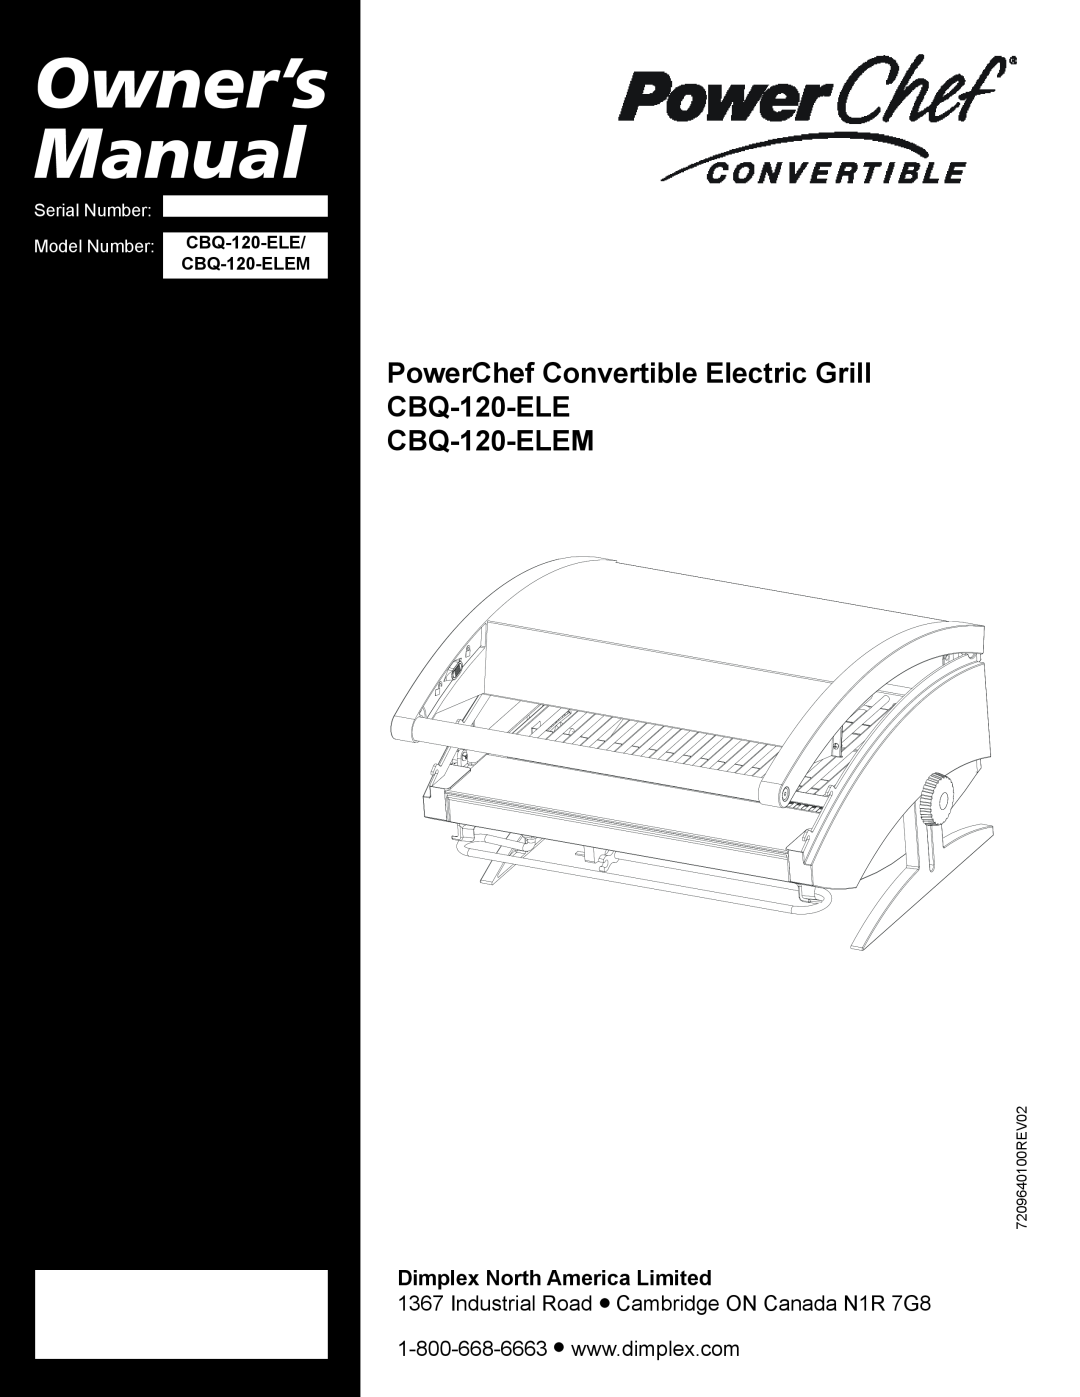 Dimplex owner manual Owner’s Manual, PowerChef Convertible Electric Grill CBQ-120-ELE CBQ-120-ELEM 